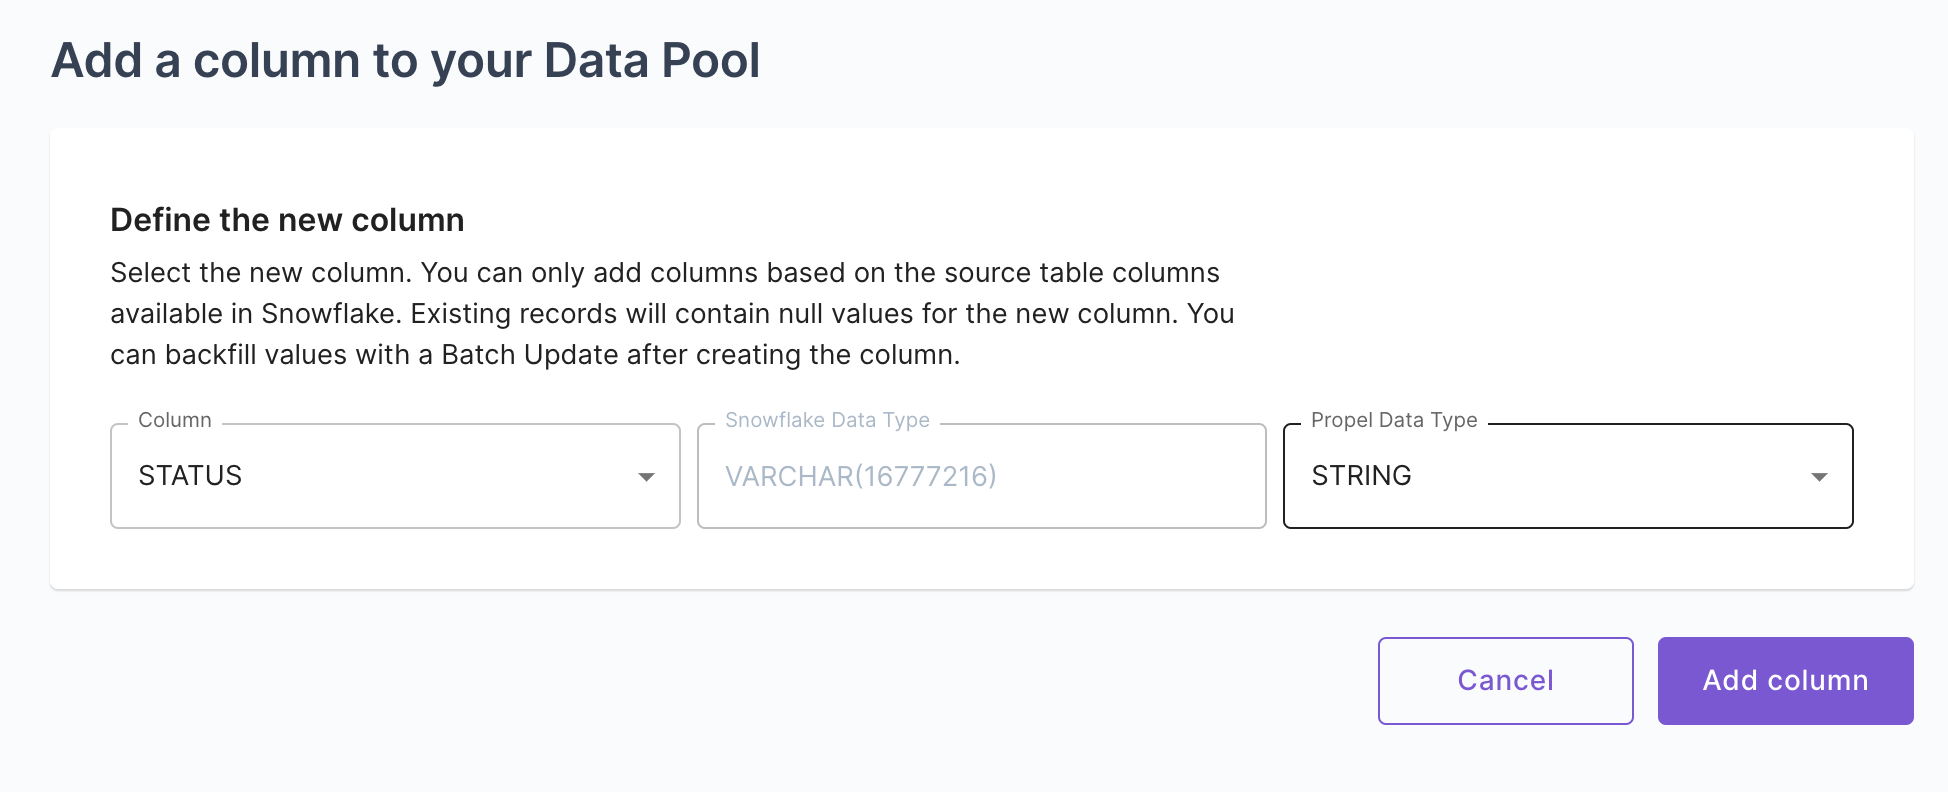 Add column to Data Pool